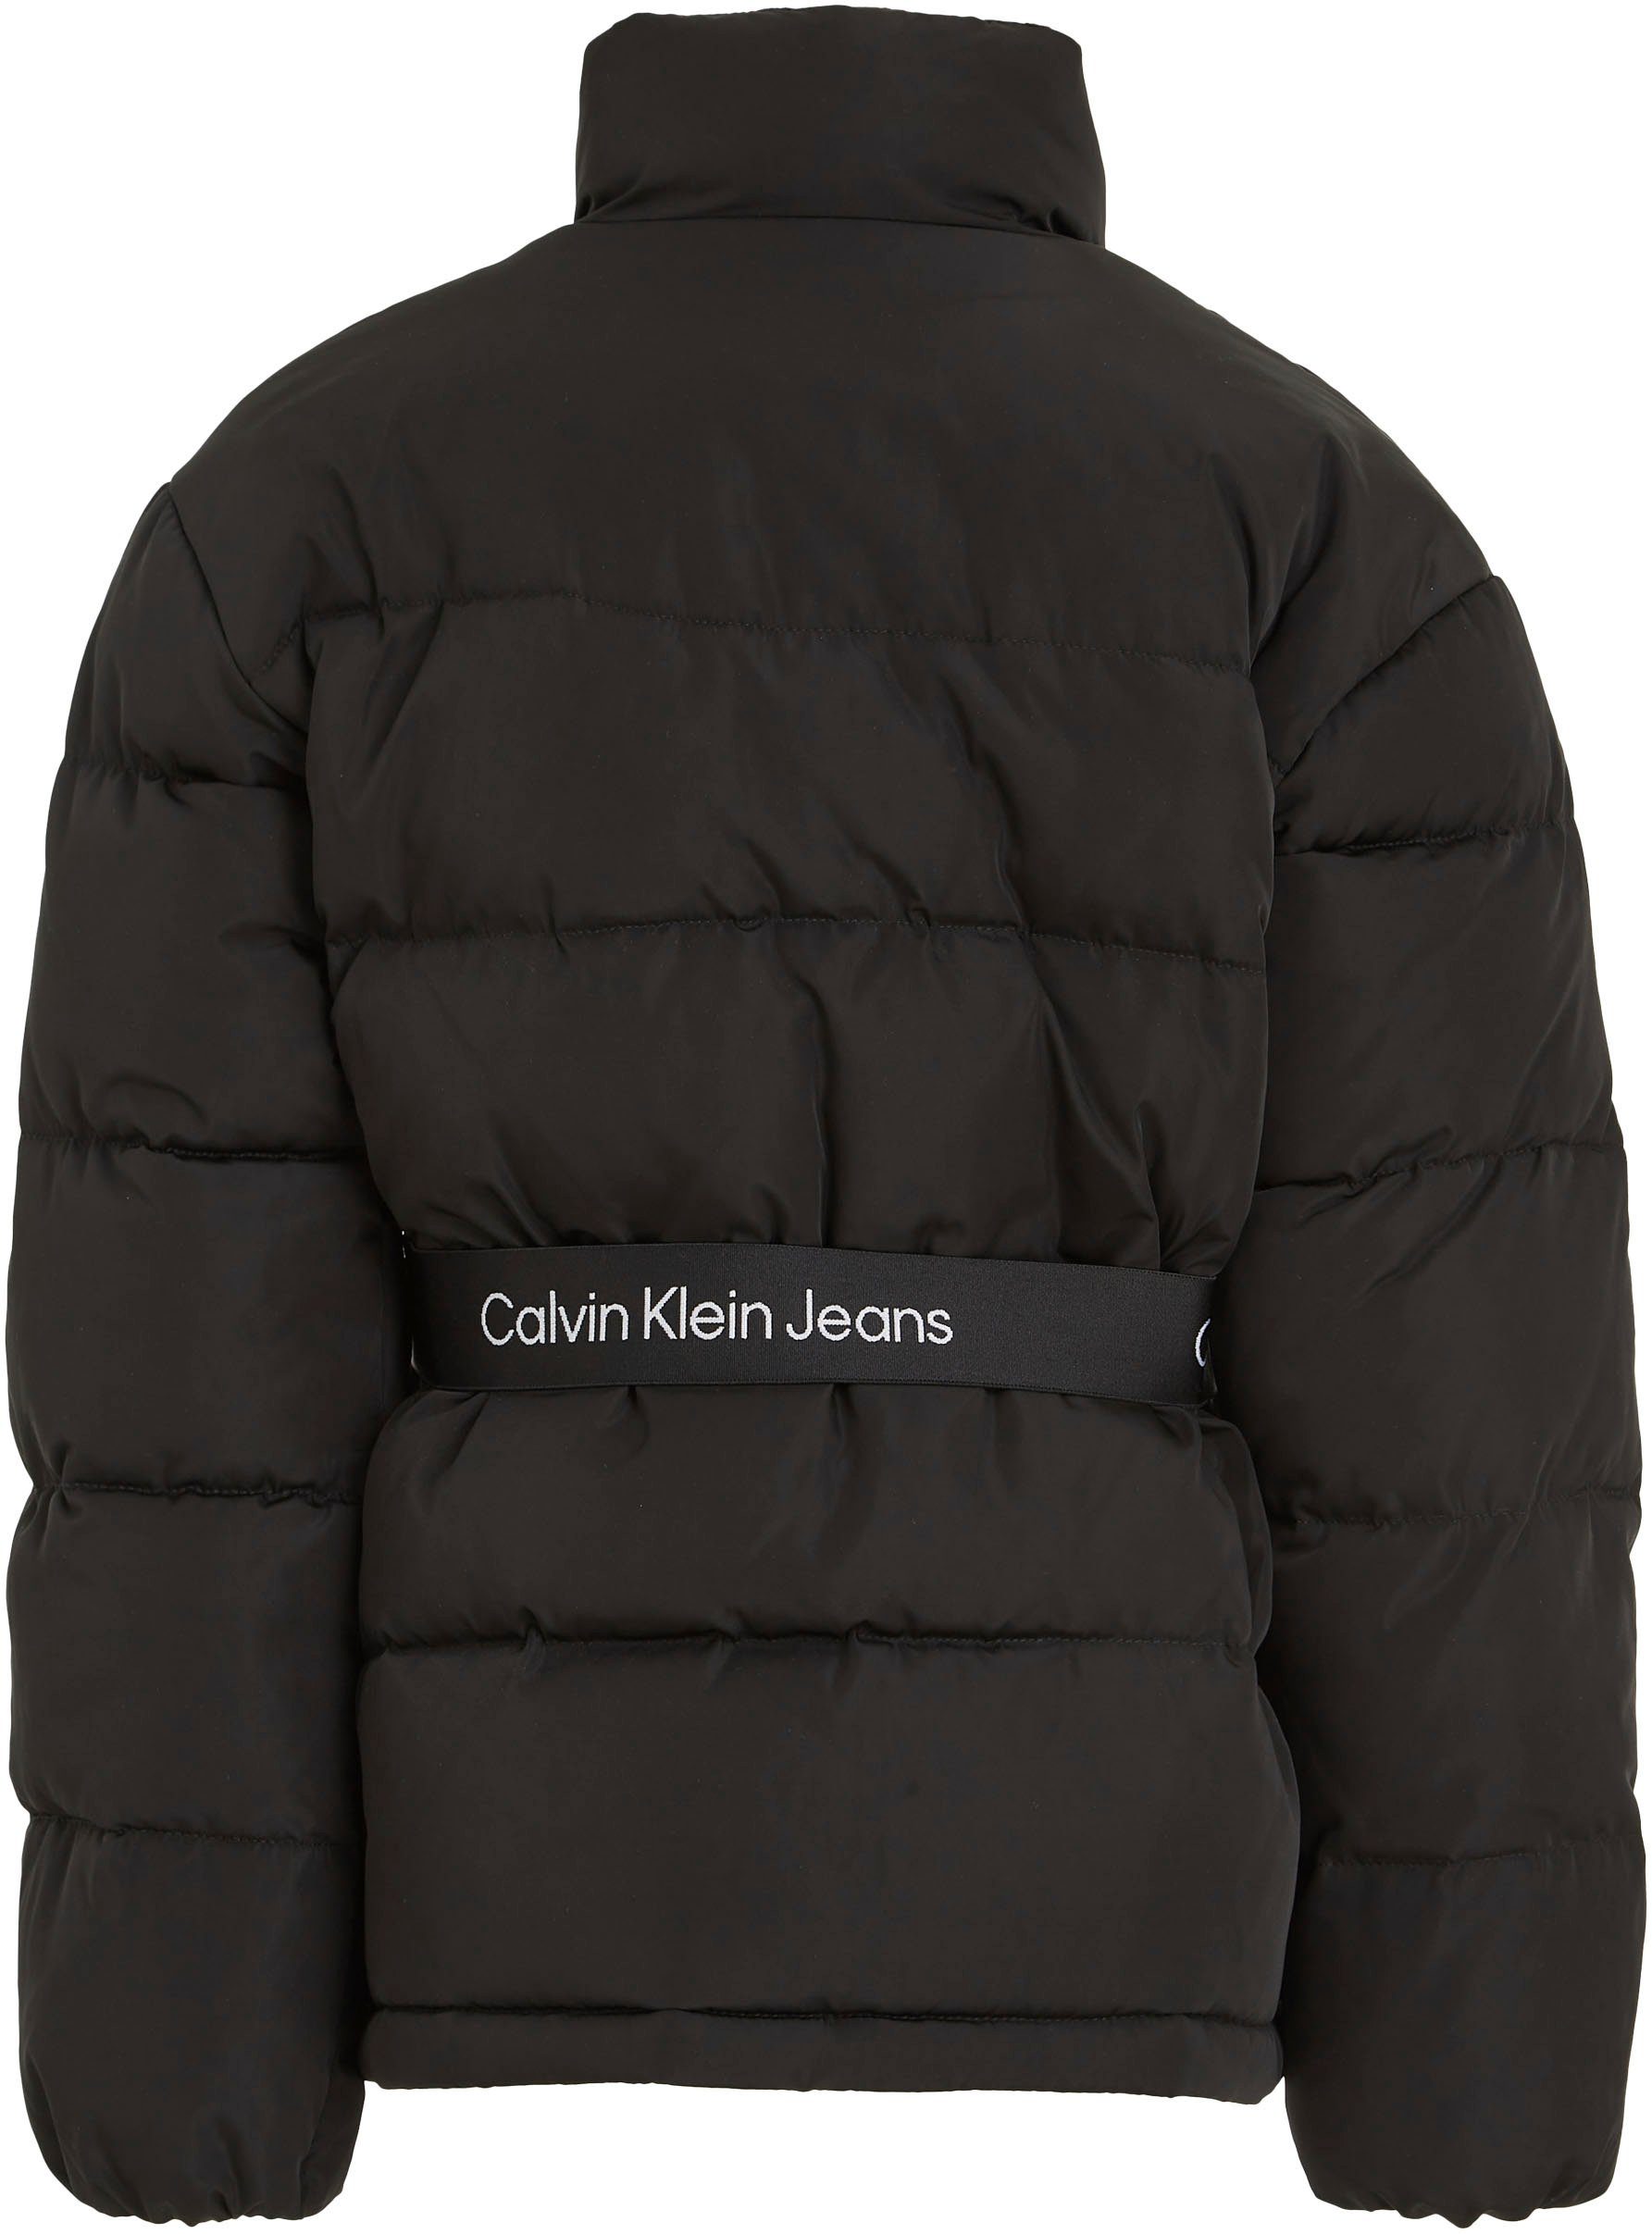 Jeans LOGO TAPE BELT Winterjacke Klein Calvin Black JACKET Ck